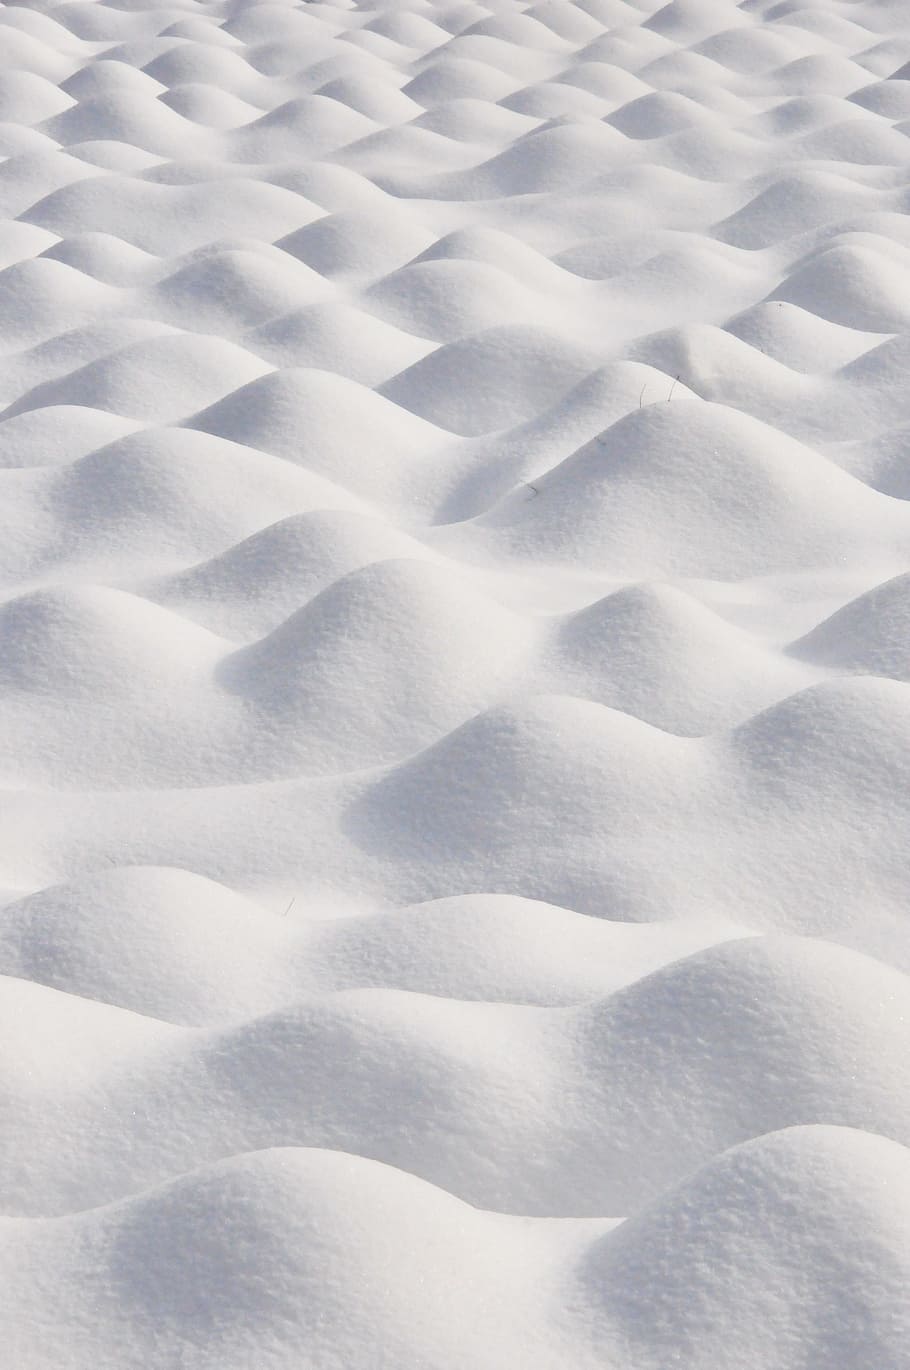 white foam, xue bai, snow, snowflake, winter, snow hill, snow mountain, backgrounds, full frame, pattern